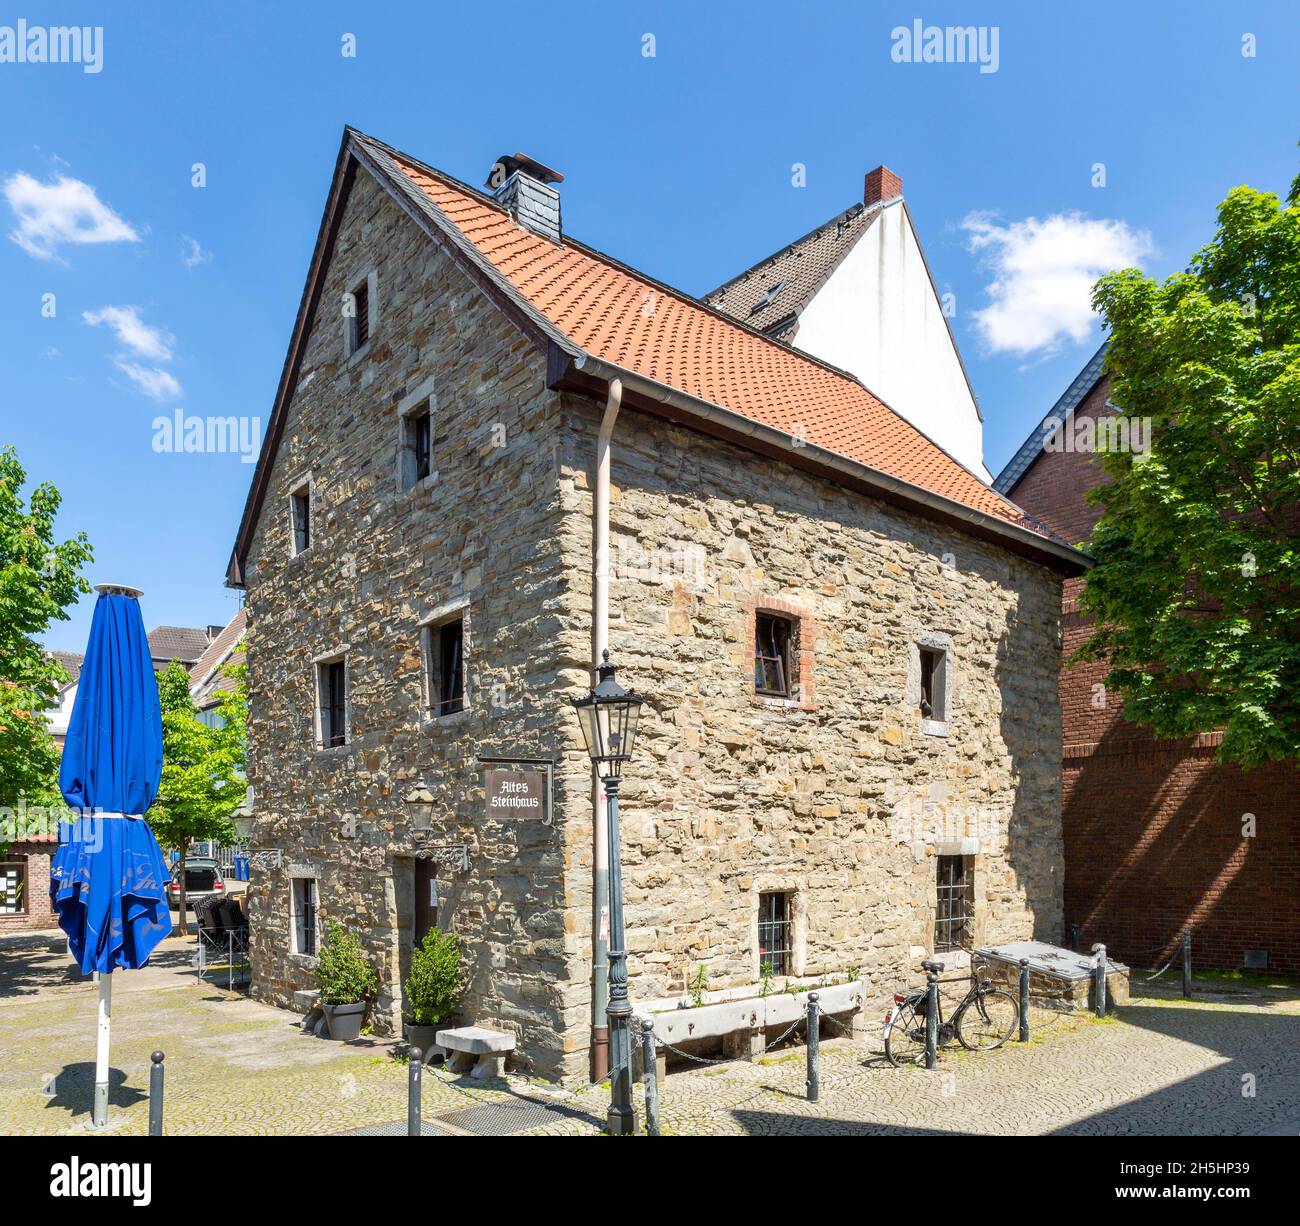 Altes stone house, Ratingen, Rhineland, North Rhine-Westphalia, Germany Stock Photo